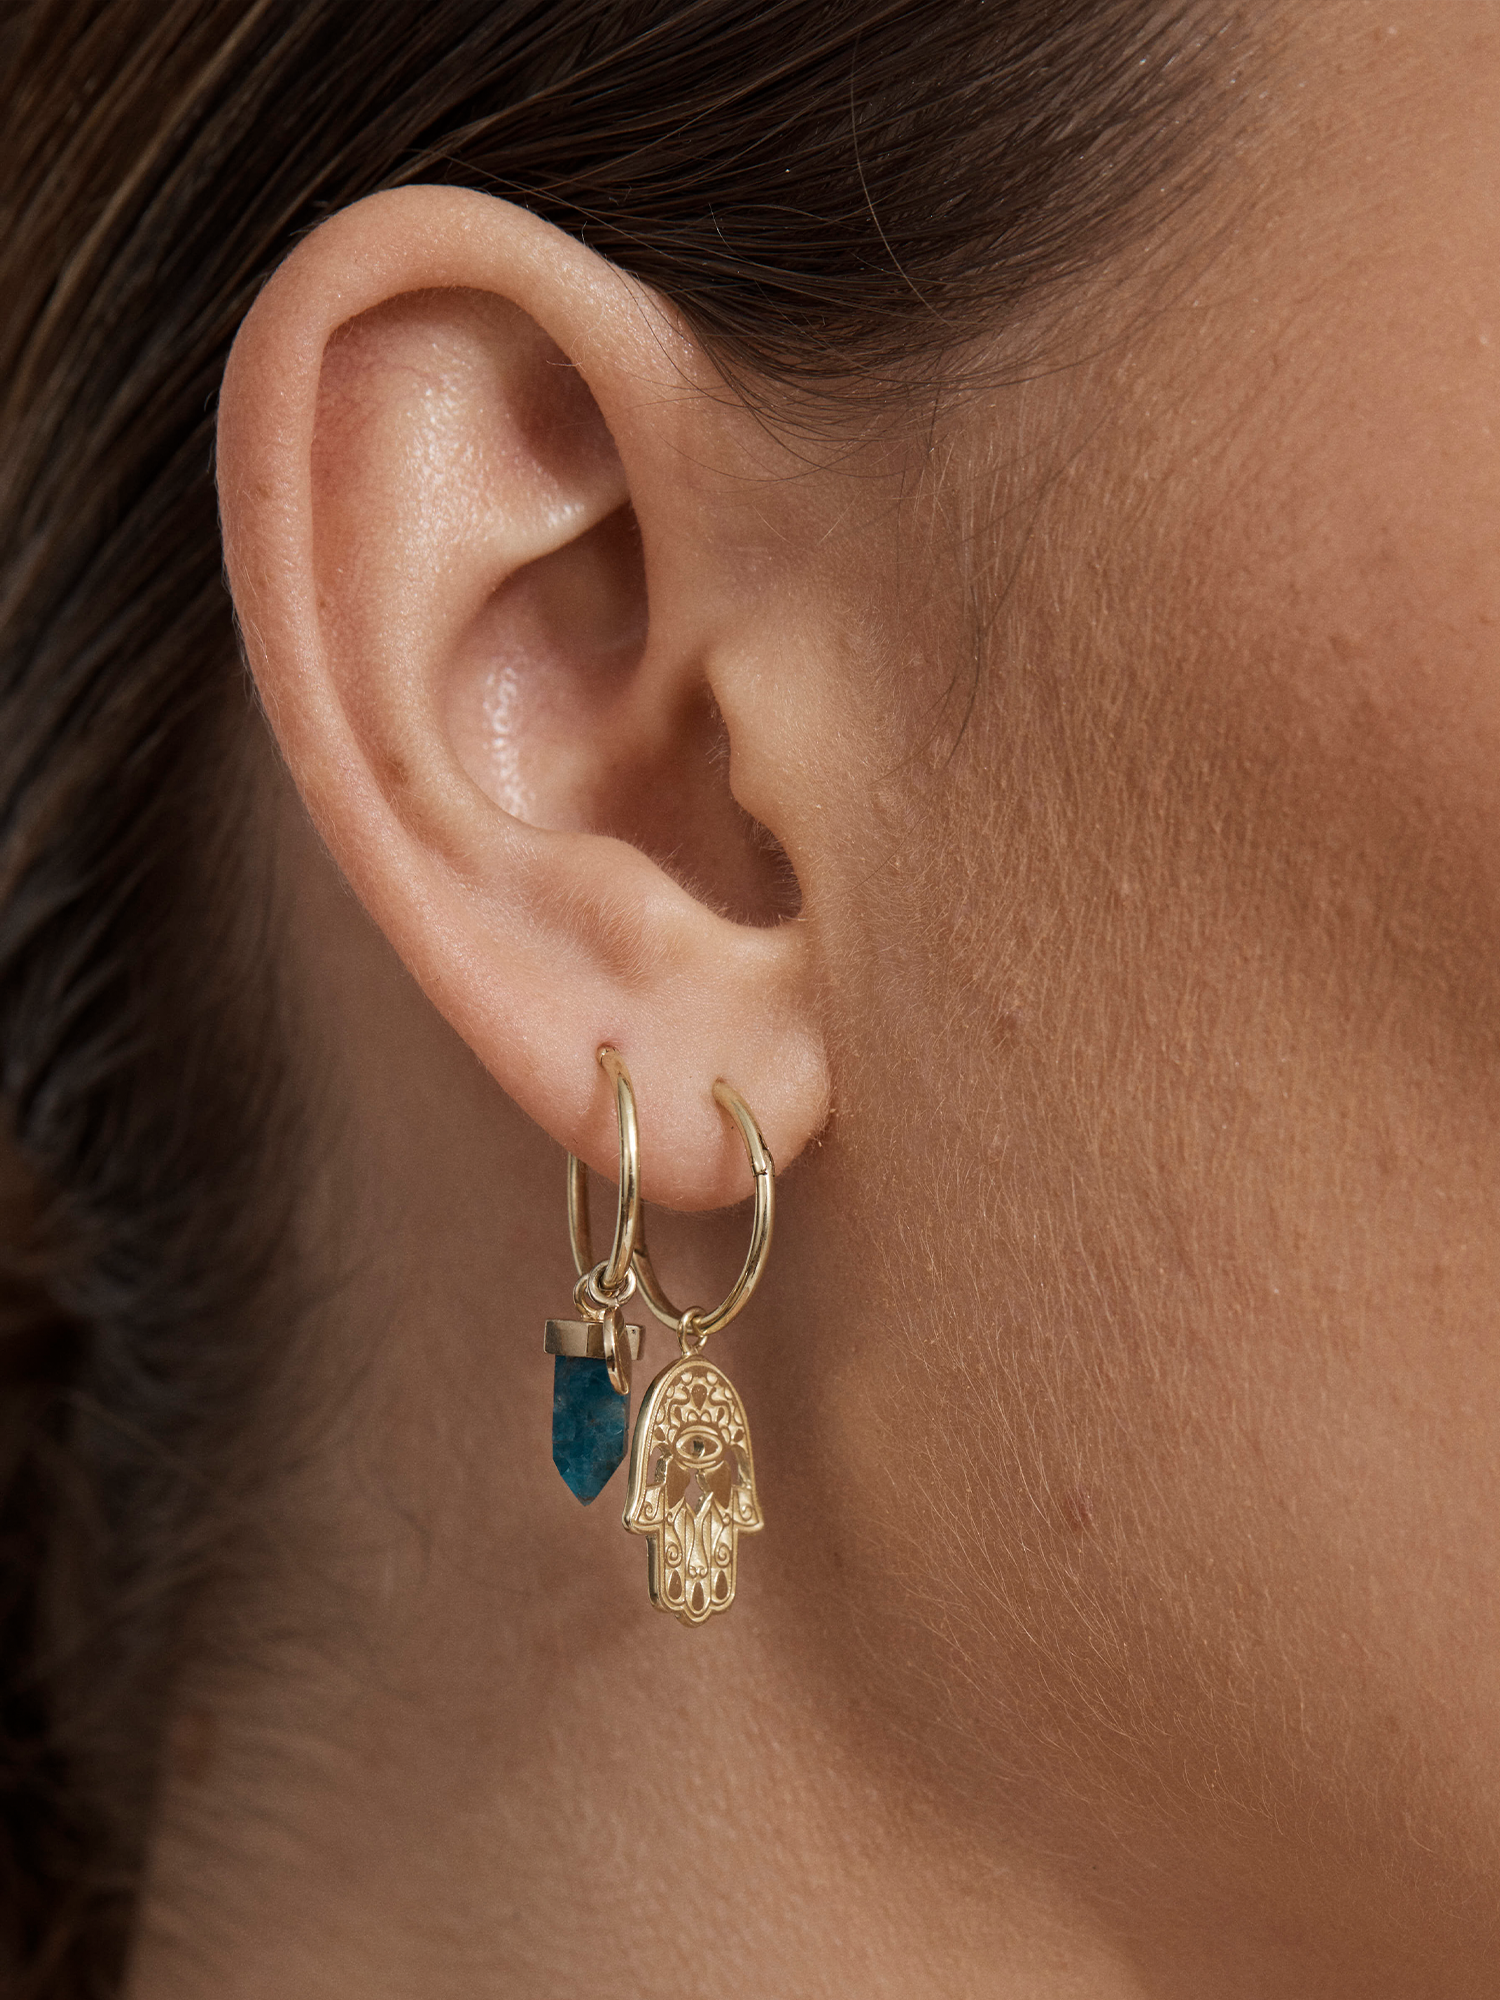 fire flies #1.5 earring charm | blue apatite